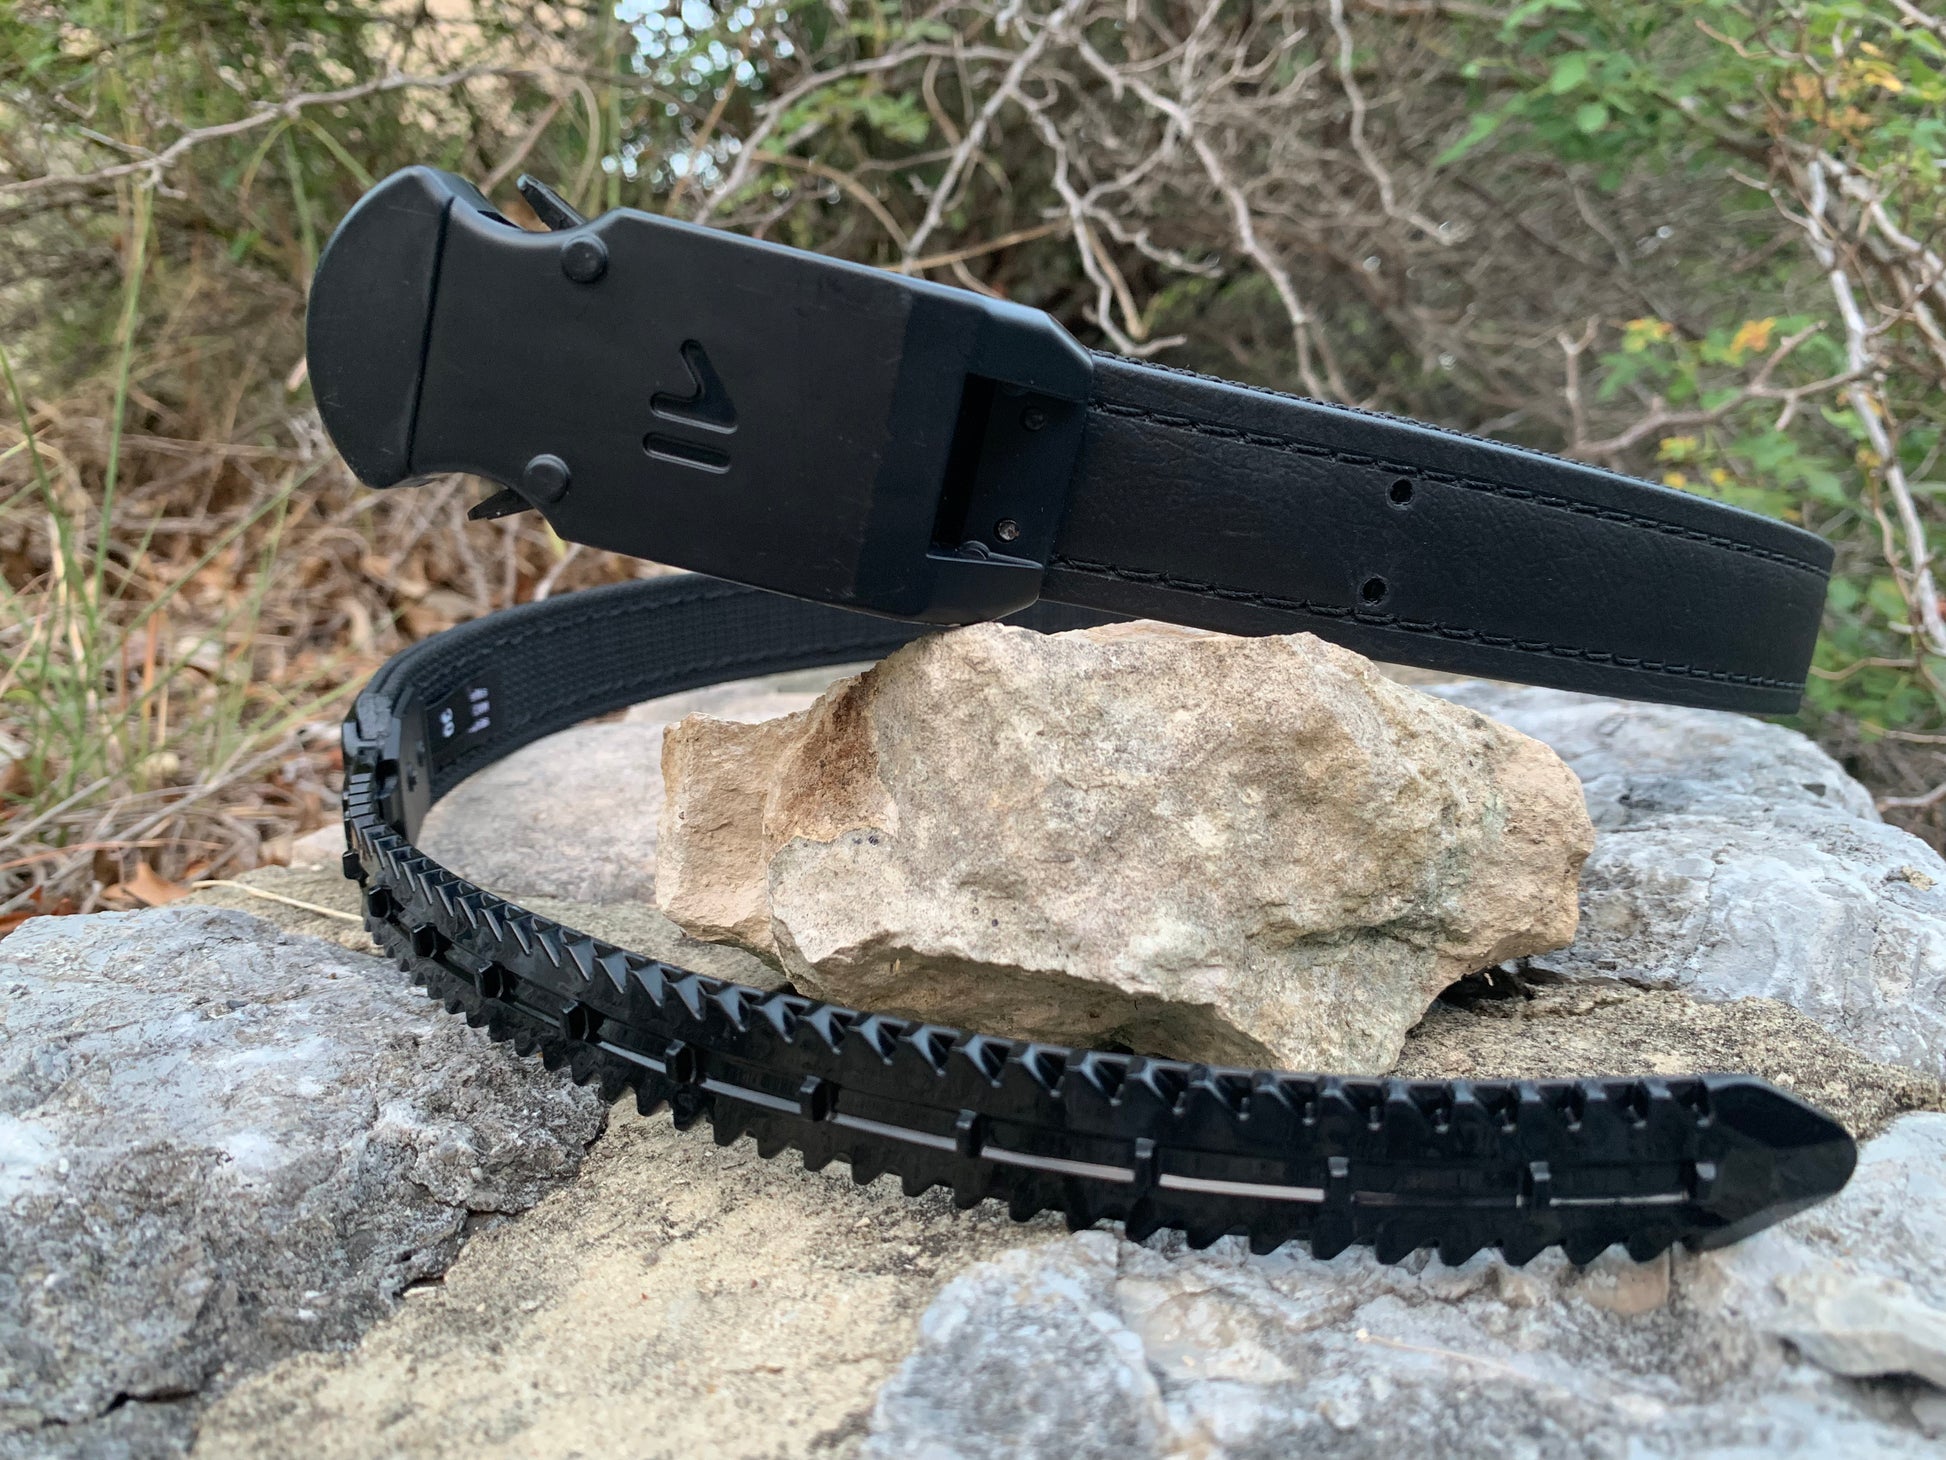 Carbon British Tan Leather Ratchet Belt & Buckle Set - Tough Apparel